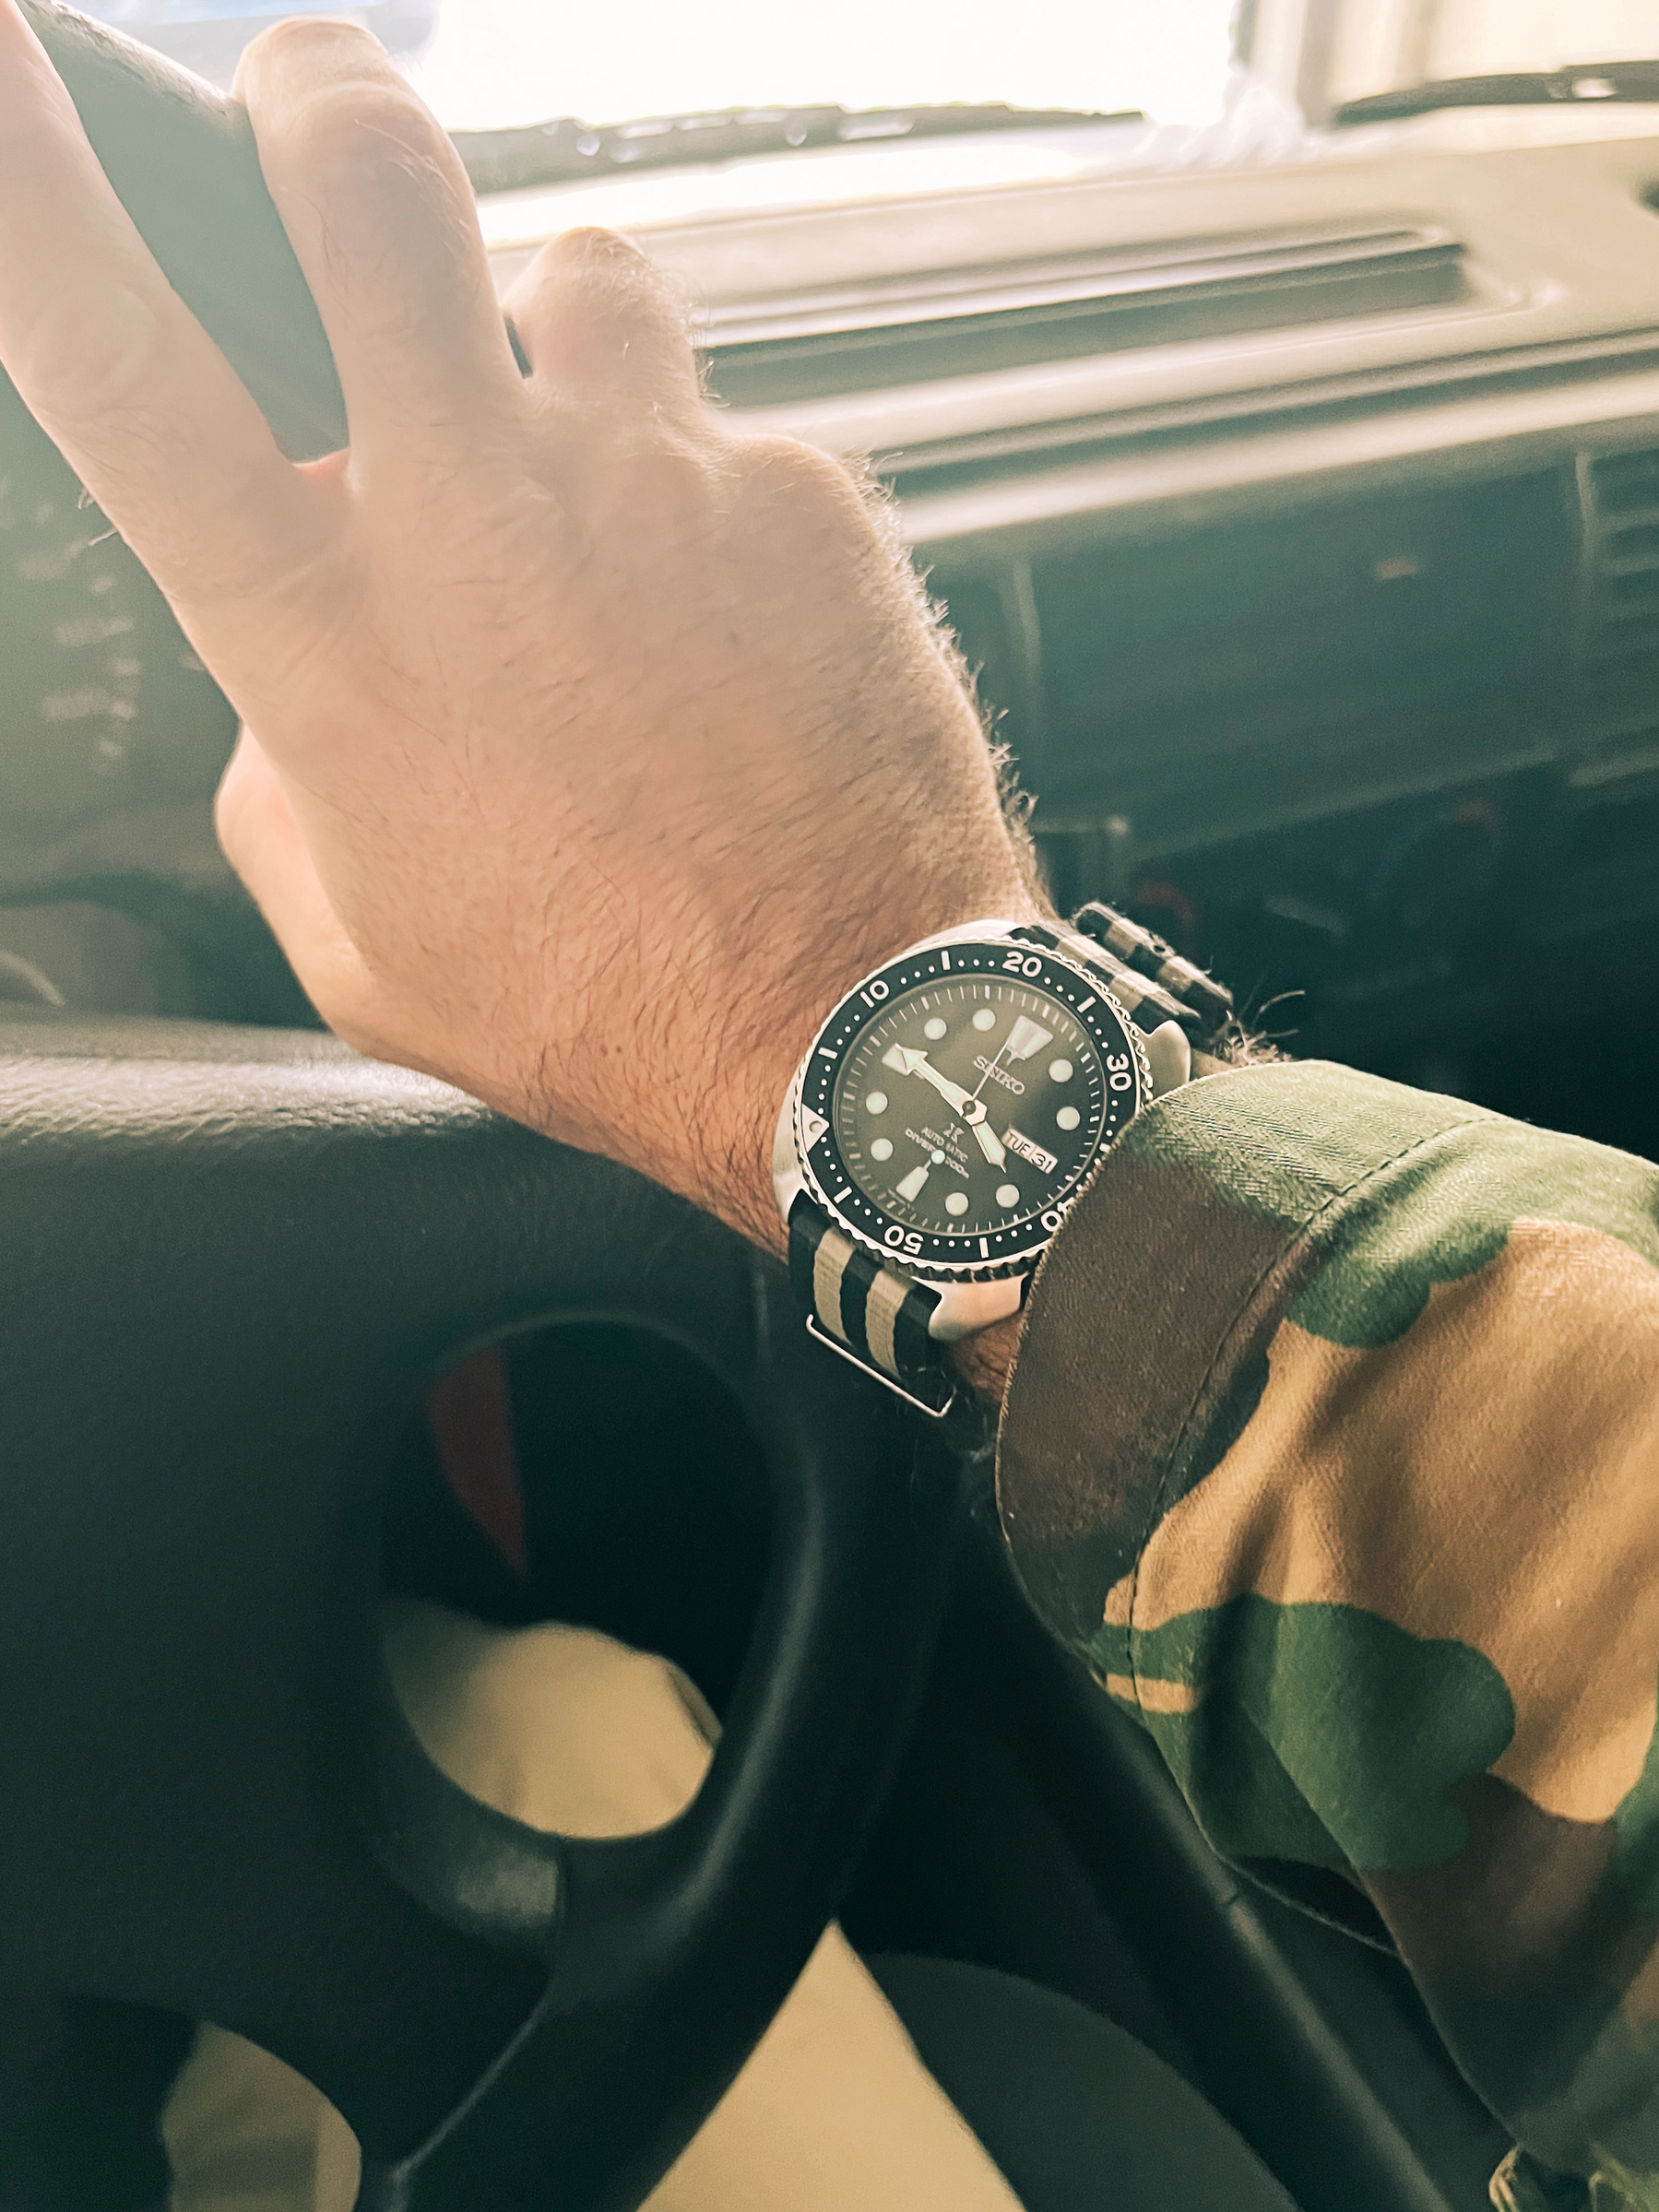 A Seiko Turtle on a wrist. Inside a car. 